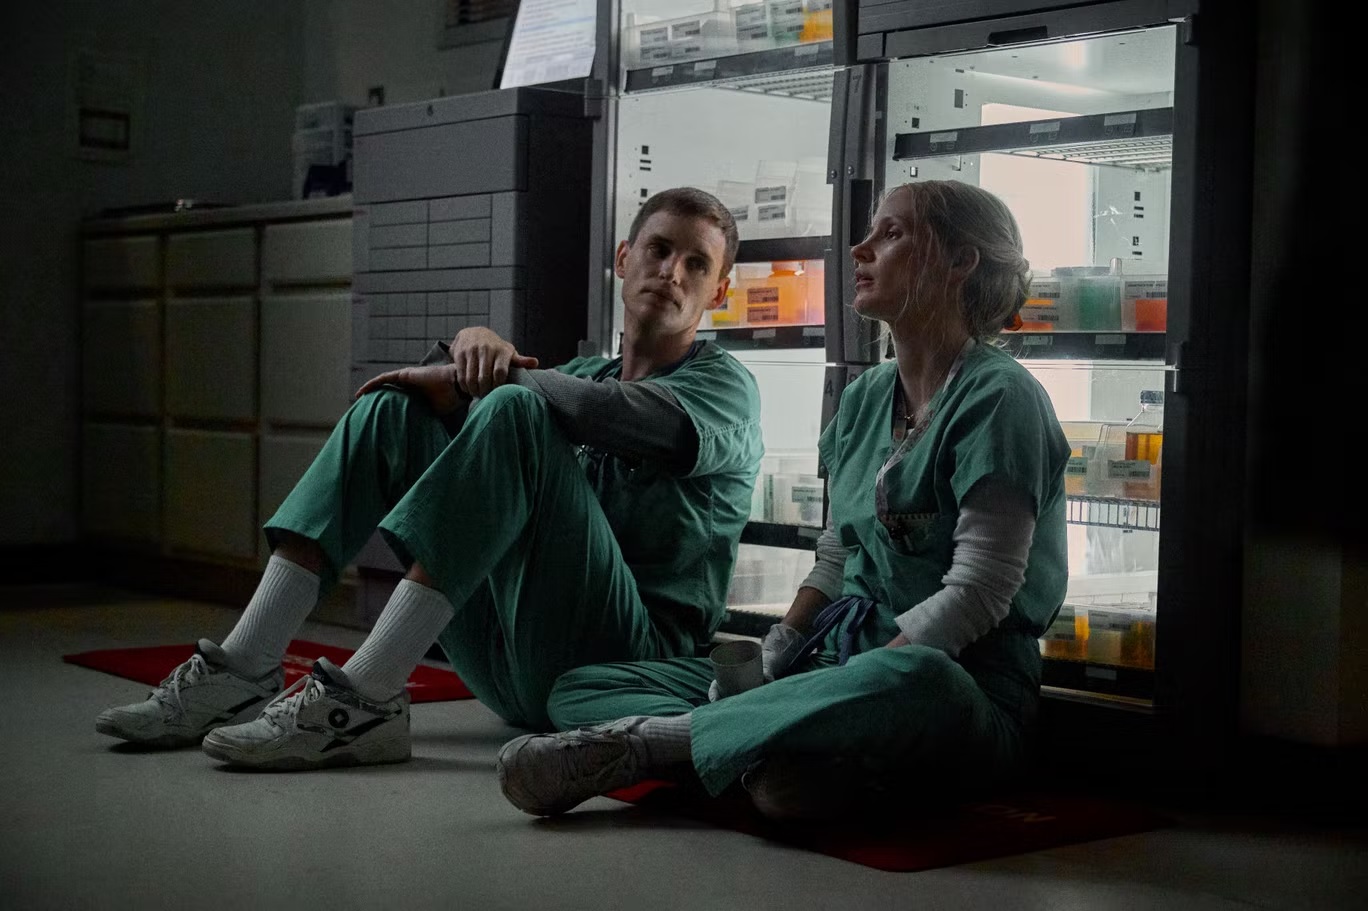 إيدي ريدماين بدور تشارلز كولين وجيسيكا تشاستين بدور آيمي لوغرين في "الممرض الجيد" (نتفليكس)